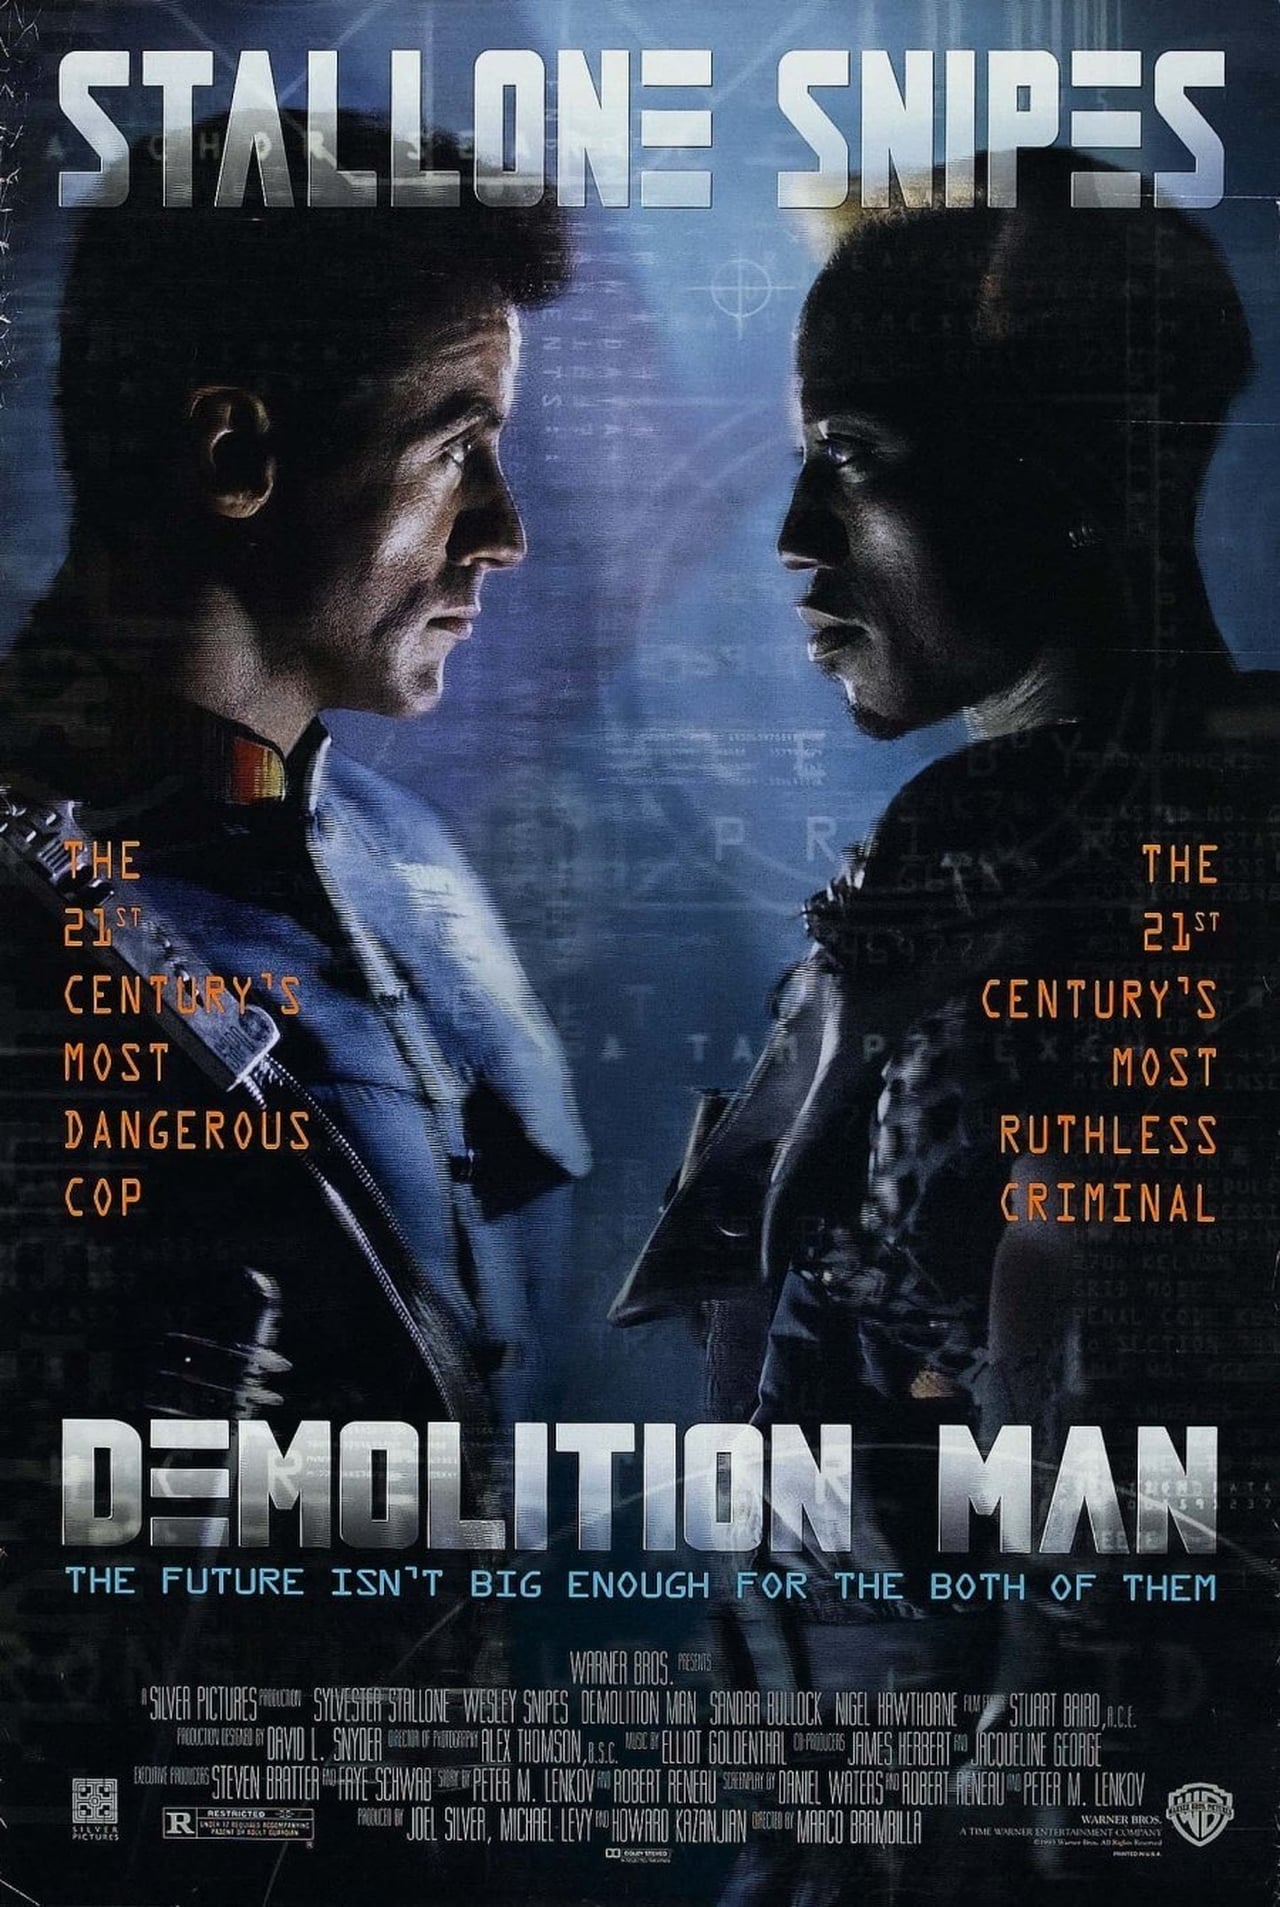 Demolition Man (1993) 192Kbps 23.976Fps 48Khz 2.0Ch DigitalTV Turkish Audio TAC